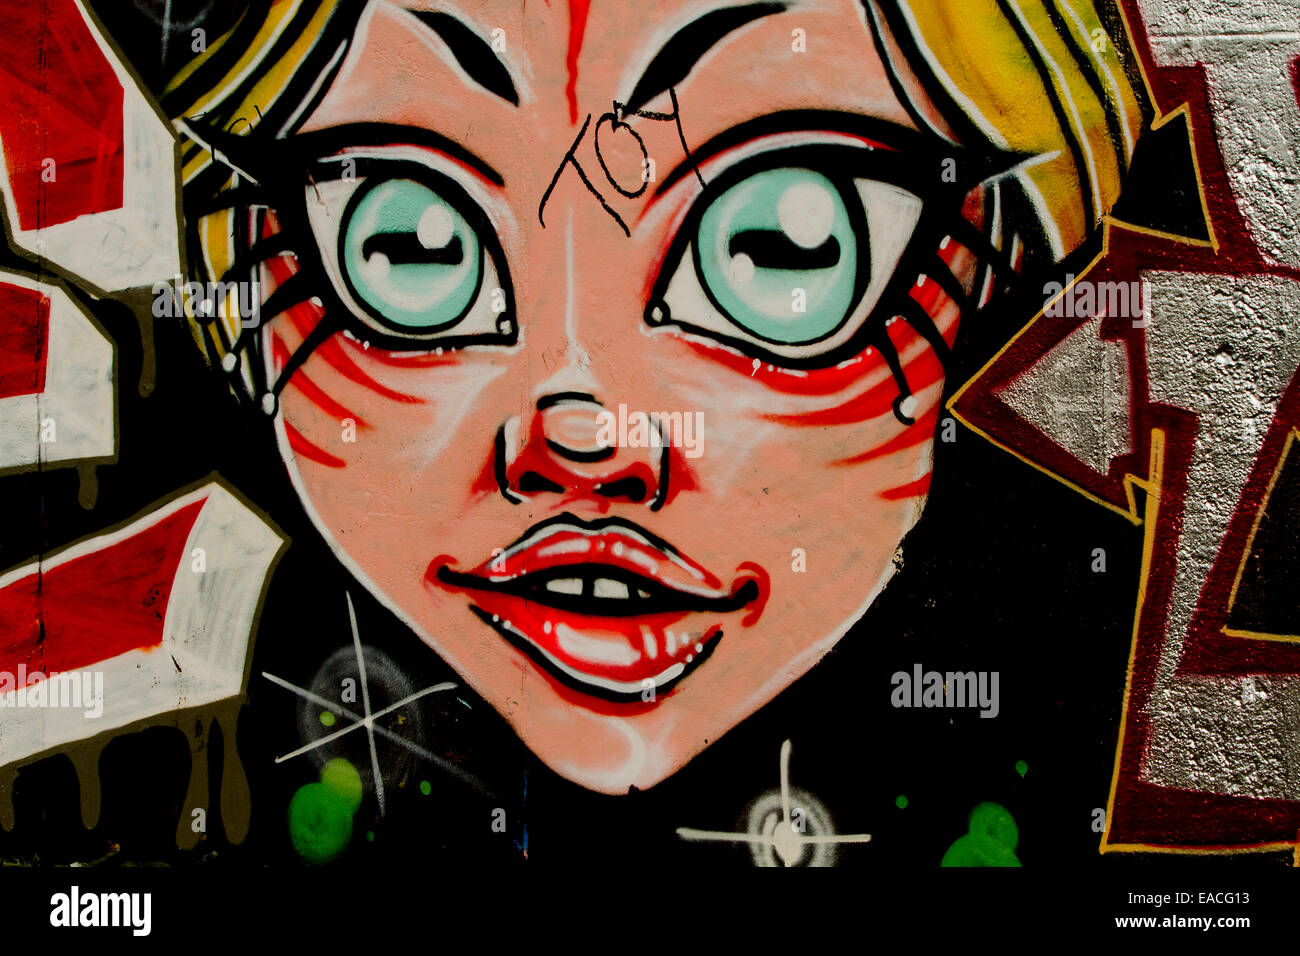 Graffiti street art Berlin wall cartoon girl face Stock Photo